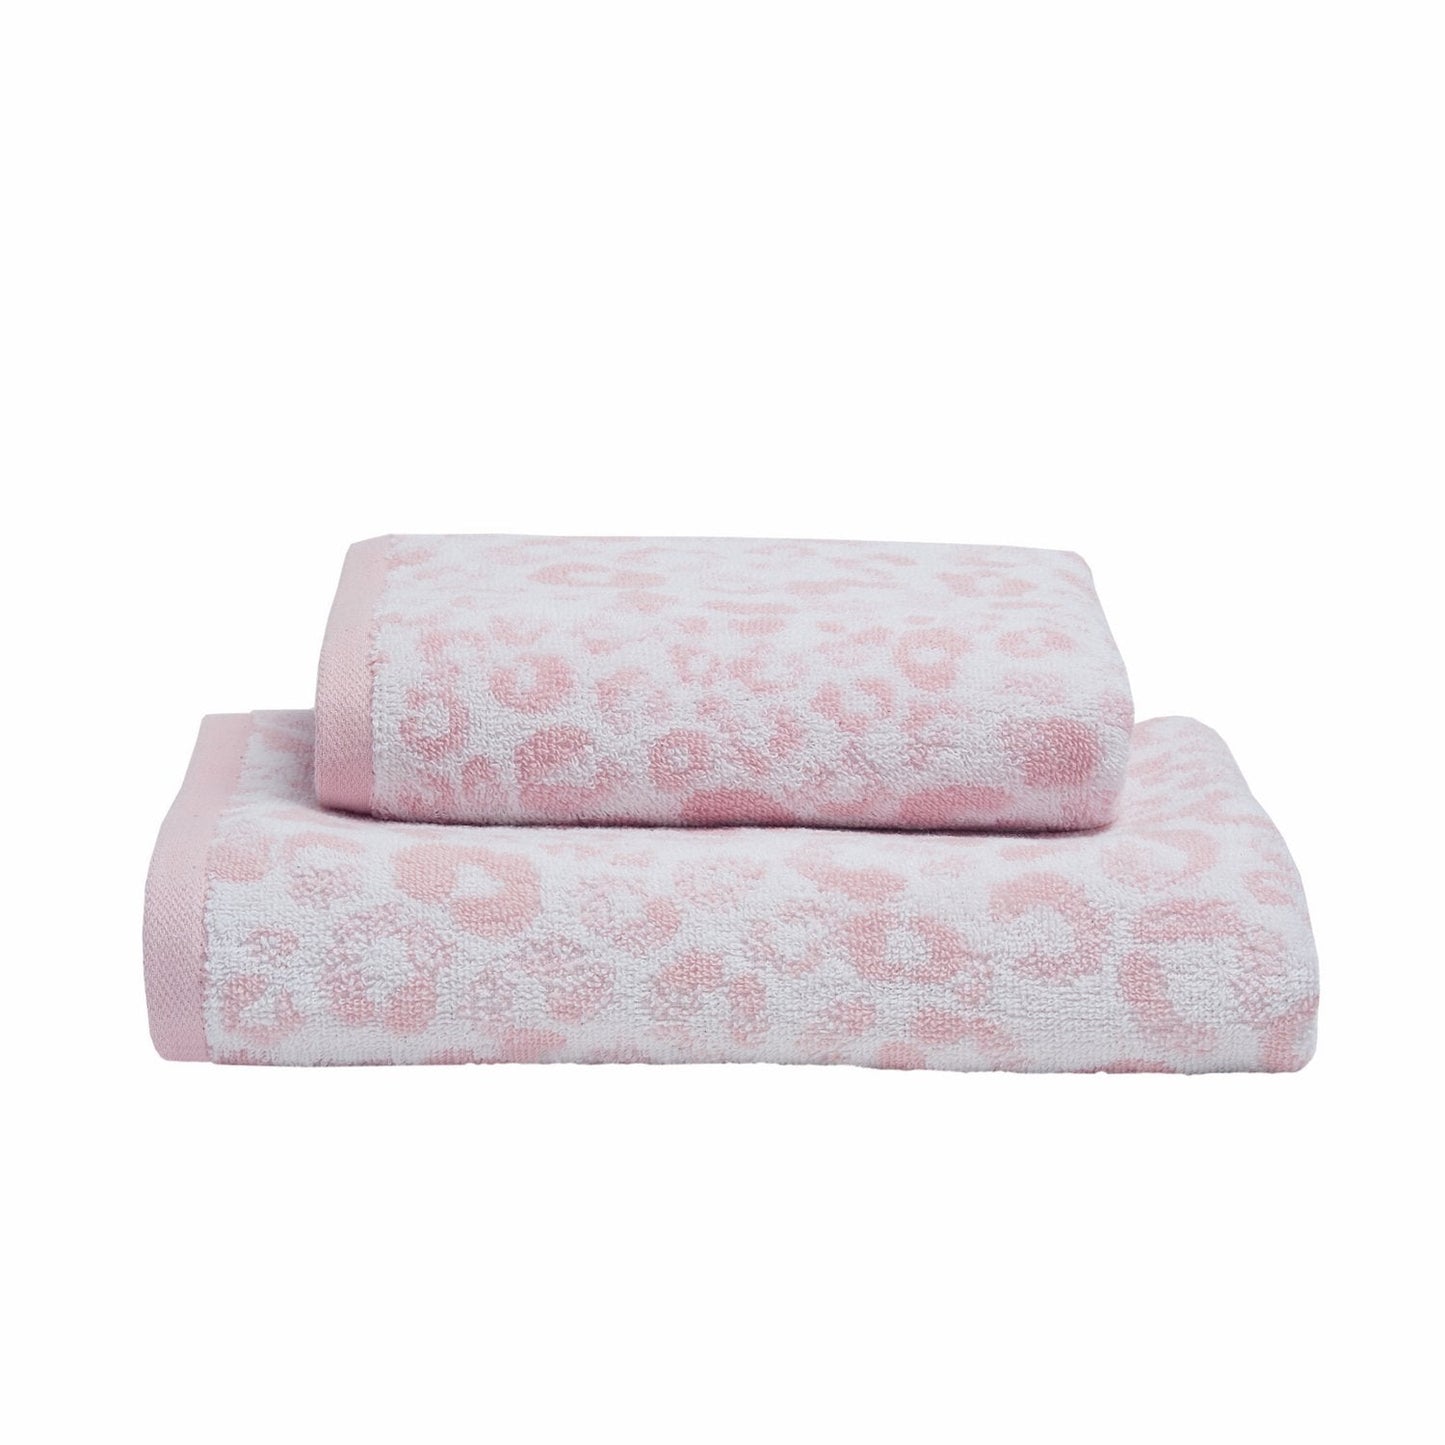 Animal Print 550gsm Blush Pink Cotton Towels